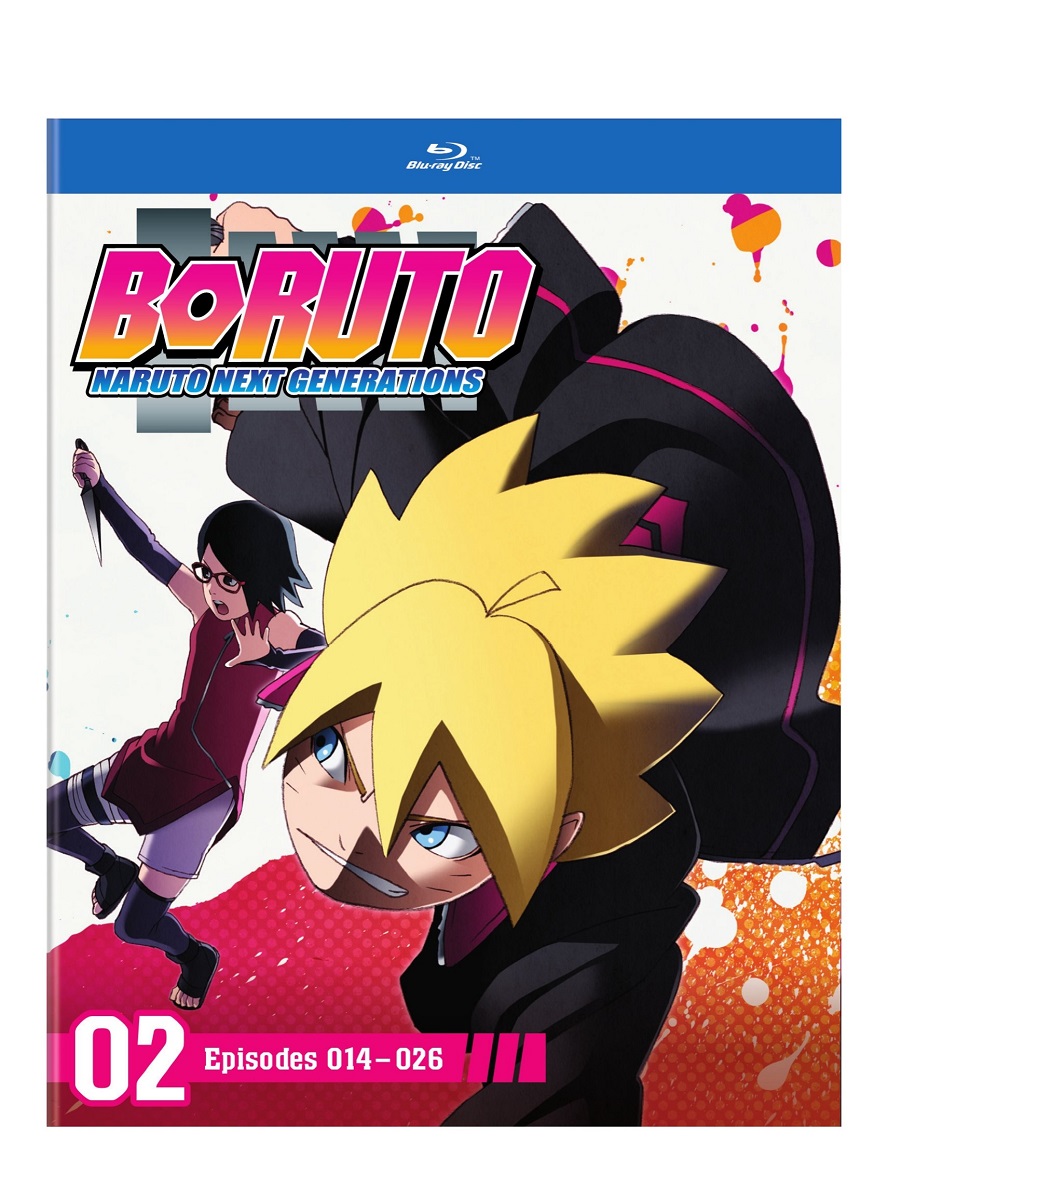 Mangás Brasil - Já está disponível o anime Boruto: Naruto Next